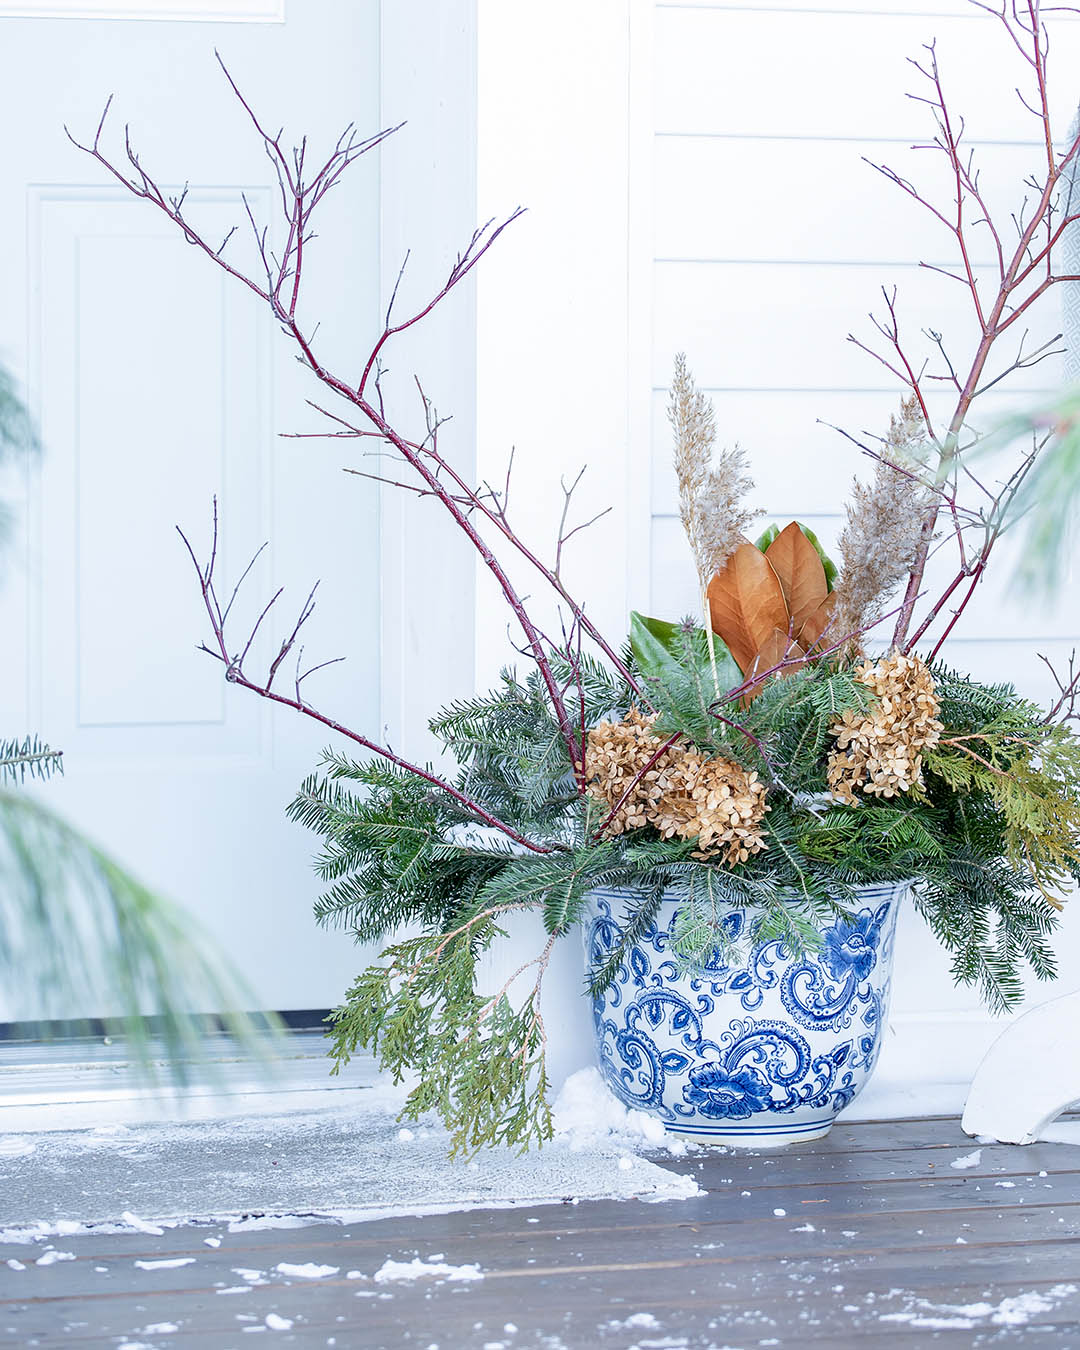 Blue and white ceramic planter for Christmas.